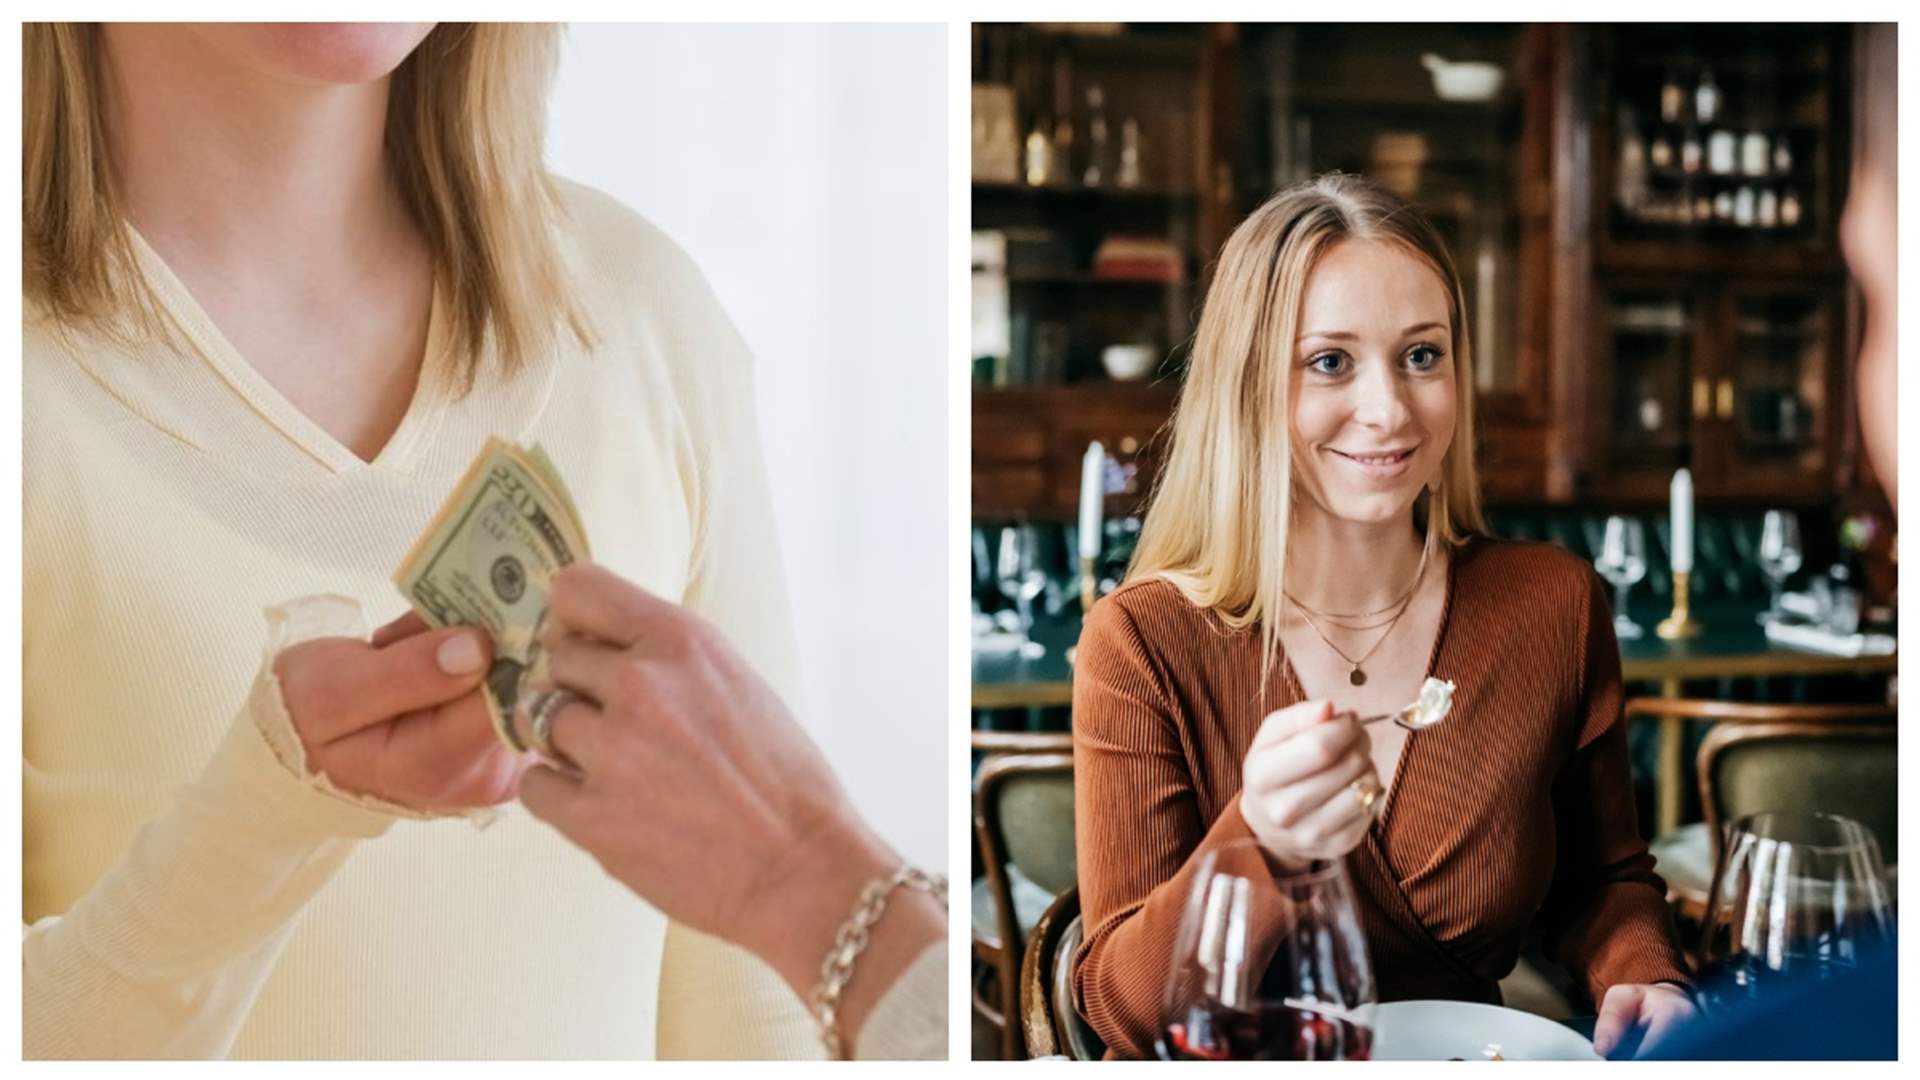 دفعت مبلغا من المال لإبنتها لمواعدة 100 رجل قبل الزواج... وهذا ما حصل! (فيديو)